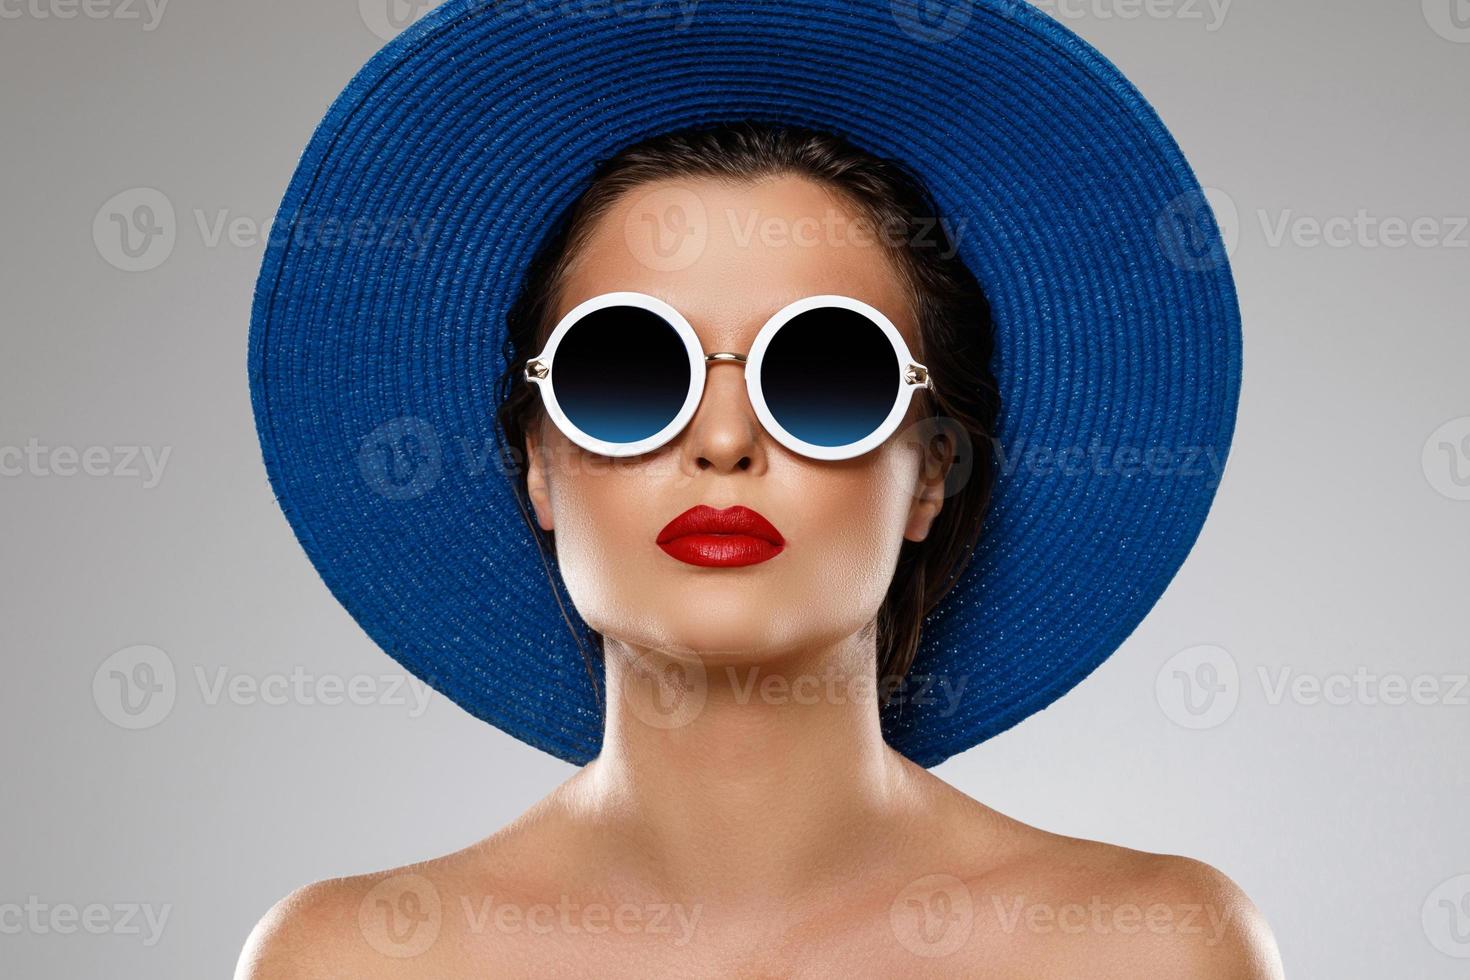 bella mujer con sombrero azul y gafas de sol está lista para las vacaciones foto